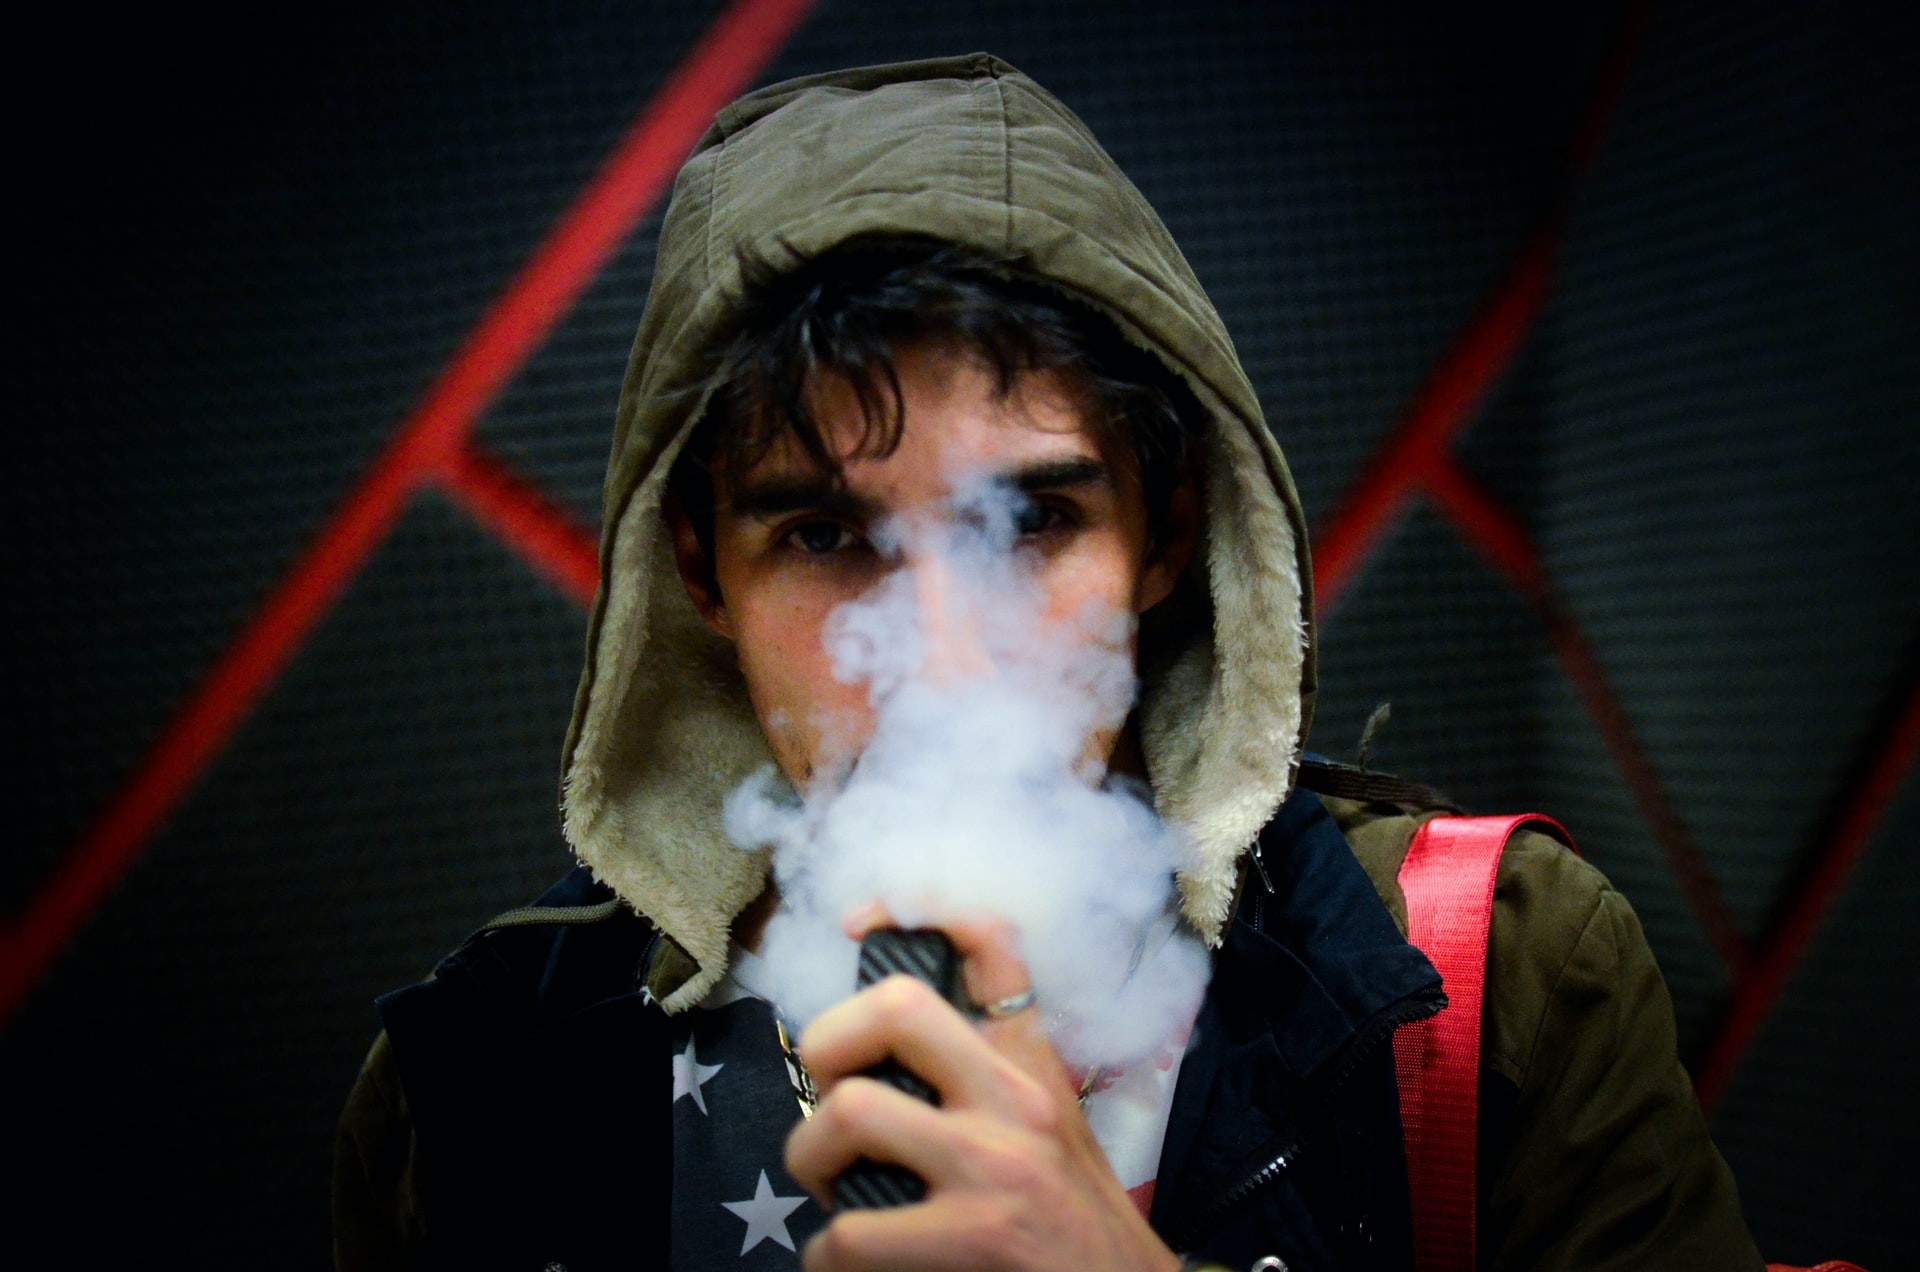 Pesquisadores dizem que cigarro vaporizador aumenta o risco de contrair Covid-19  (Foto: Unsplash)